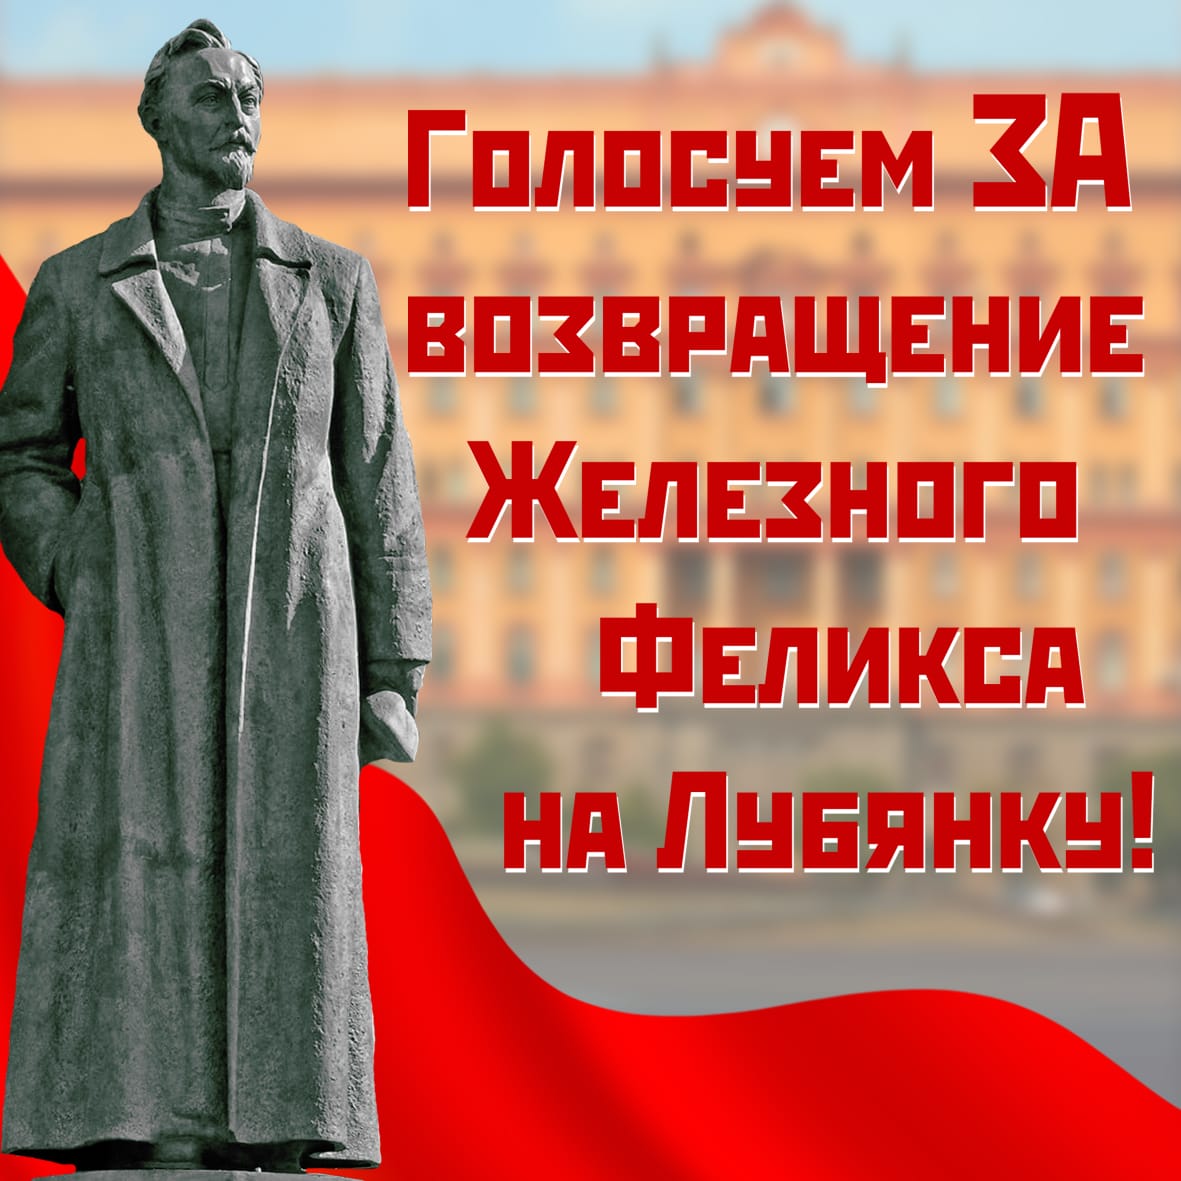 Вернуть памятник Ф.Э. Дзержинскому на законное место!